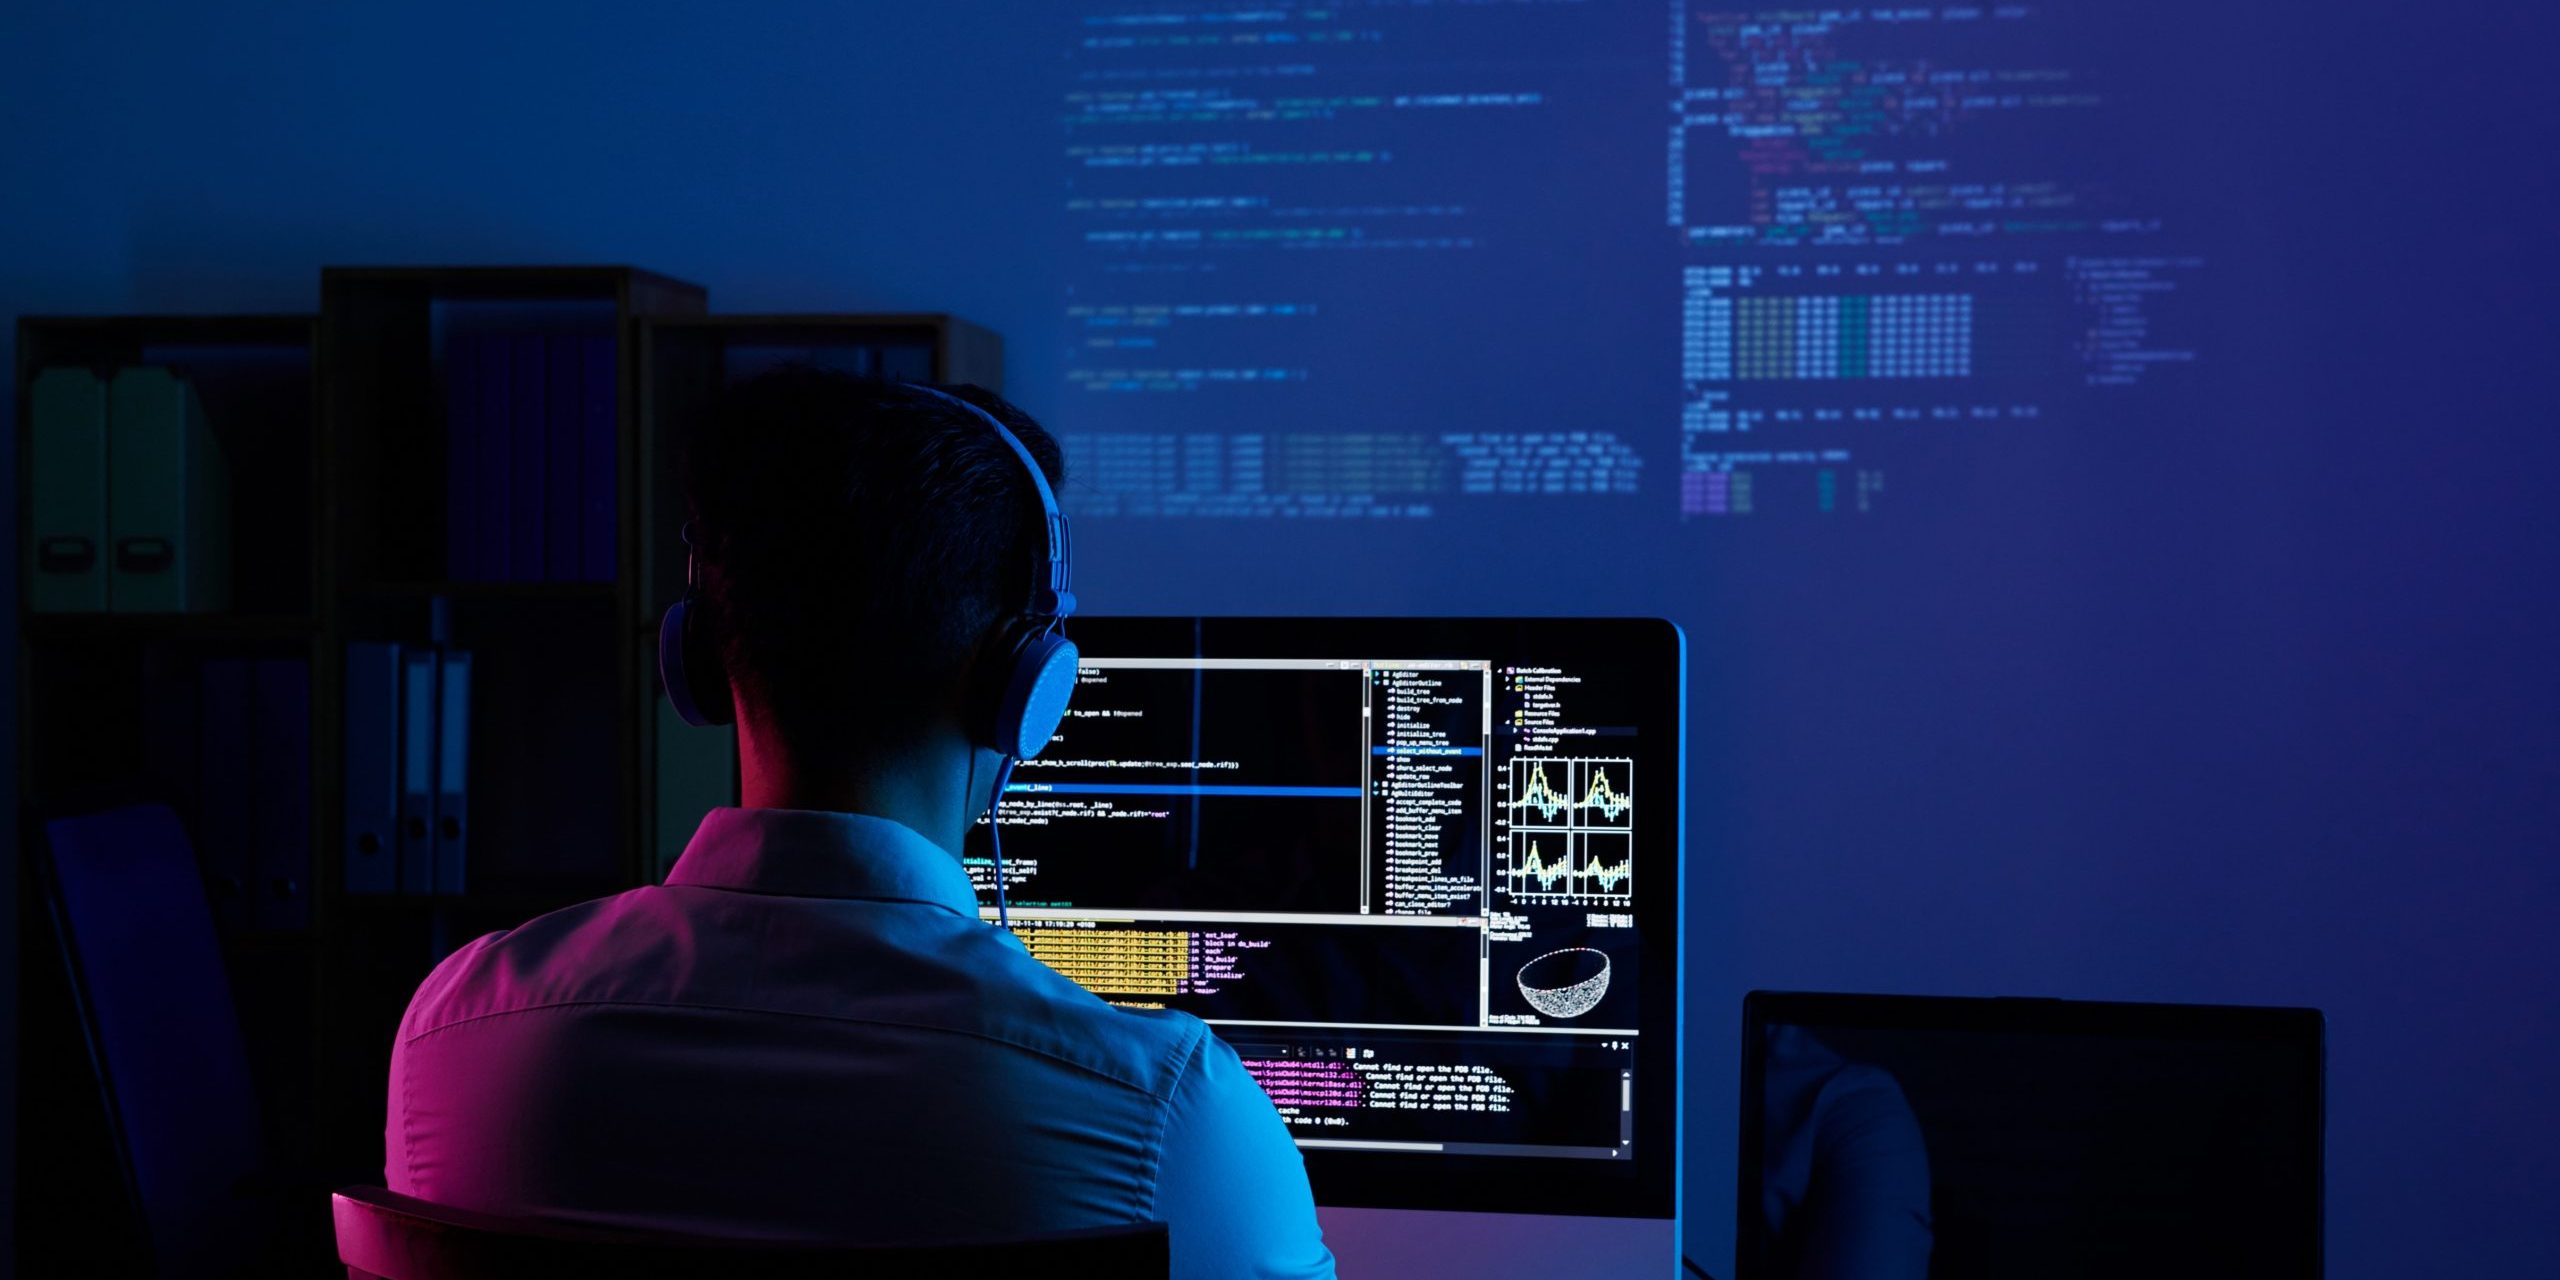 gestão da tecnologia da informação - homem em frente ao computador analisando códigos de programação